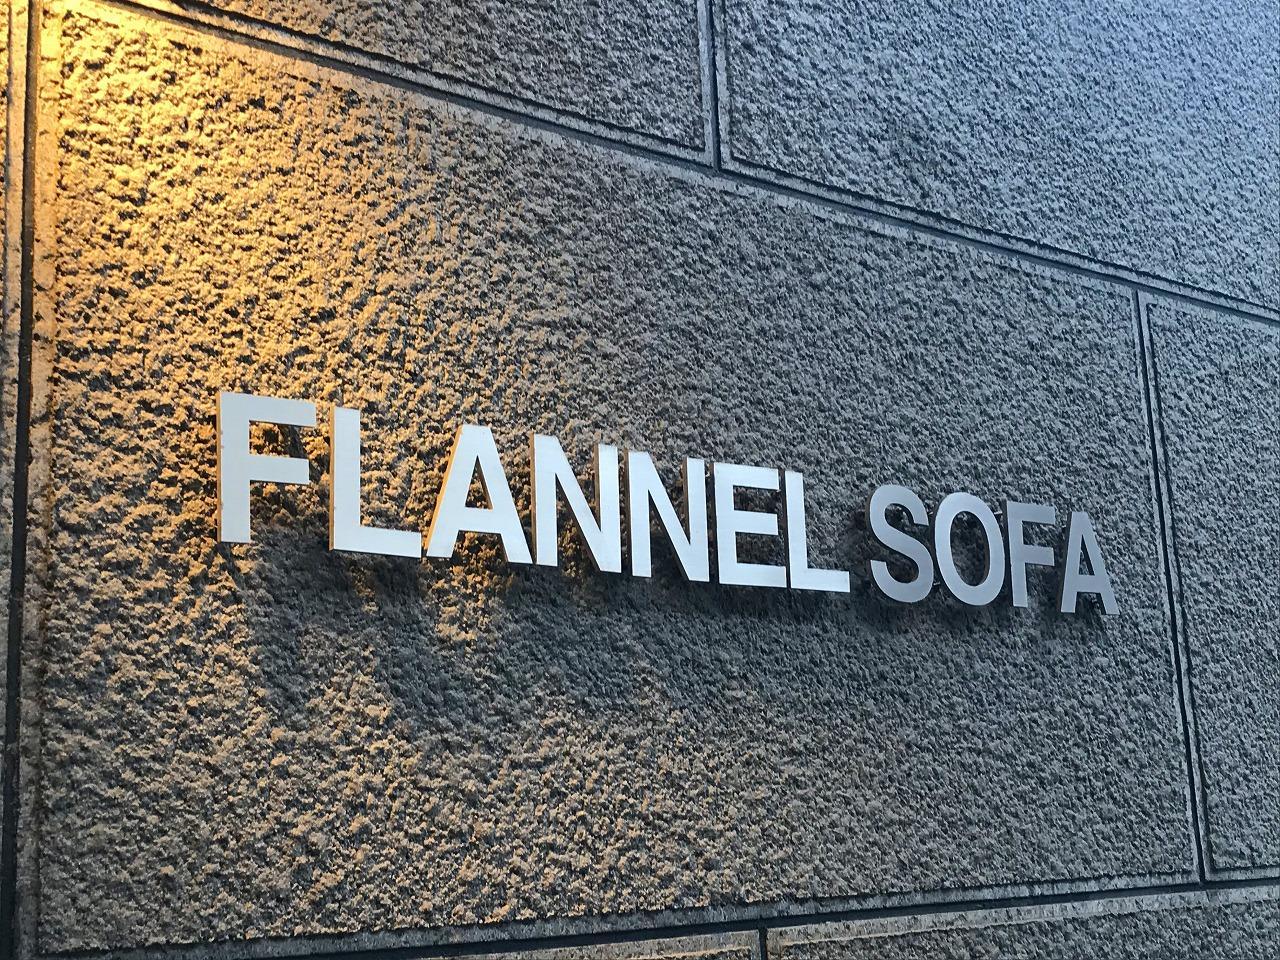 FLANNEL SOFA （フランネル　ソファ）東京ショールーム